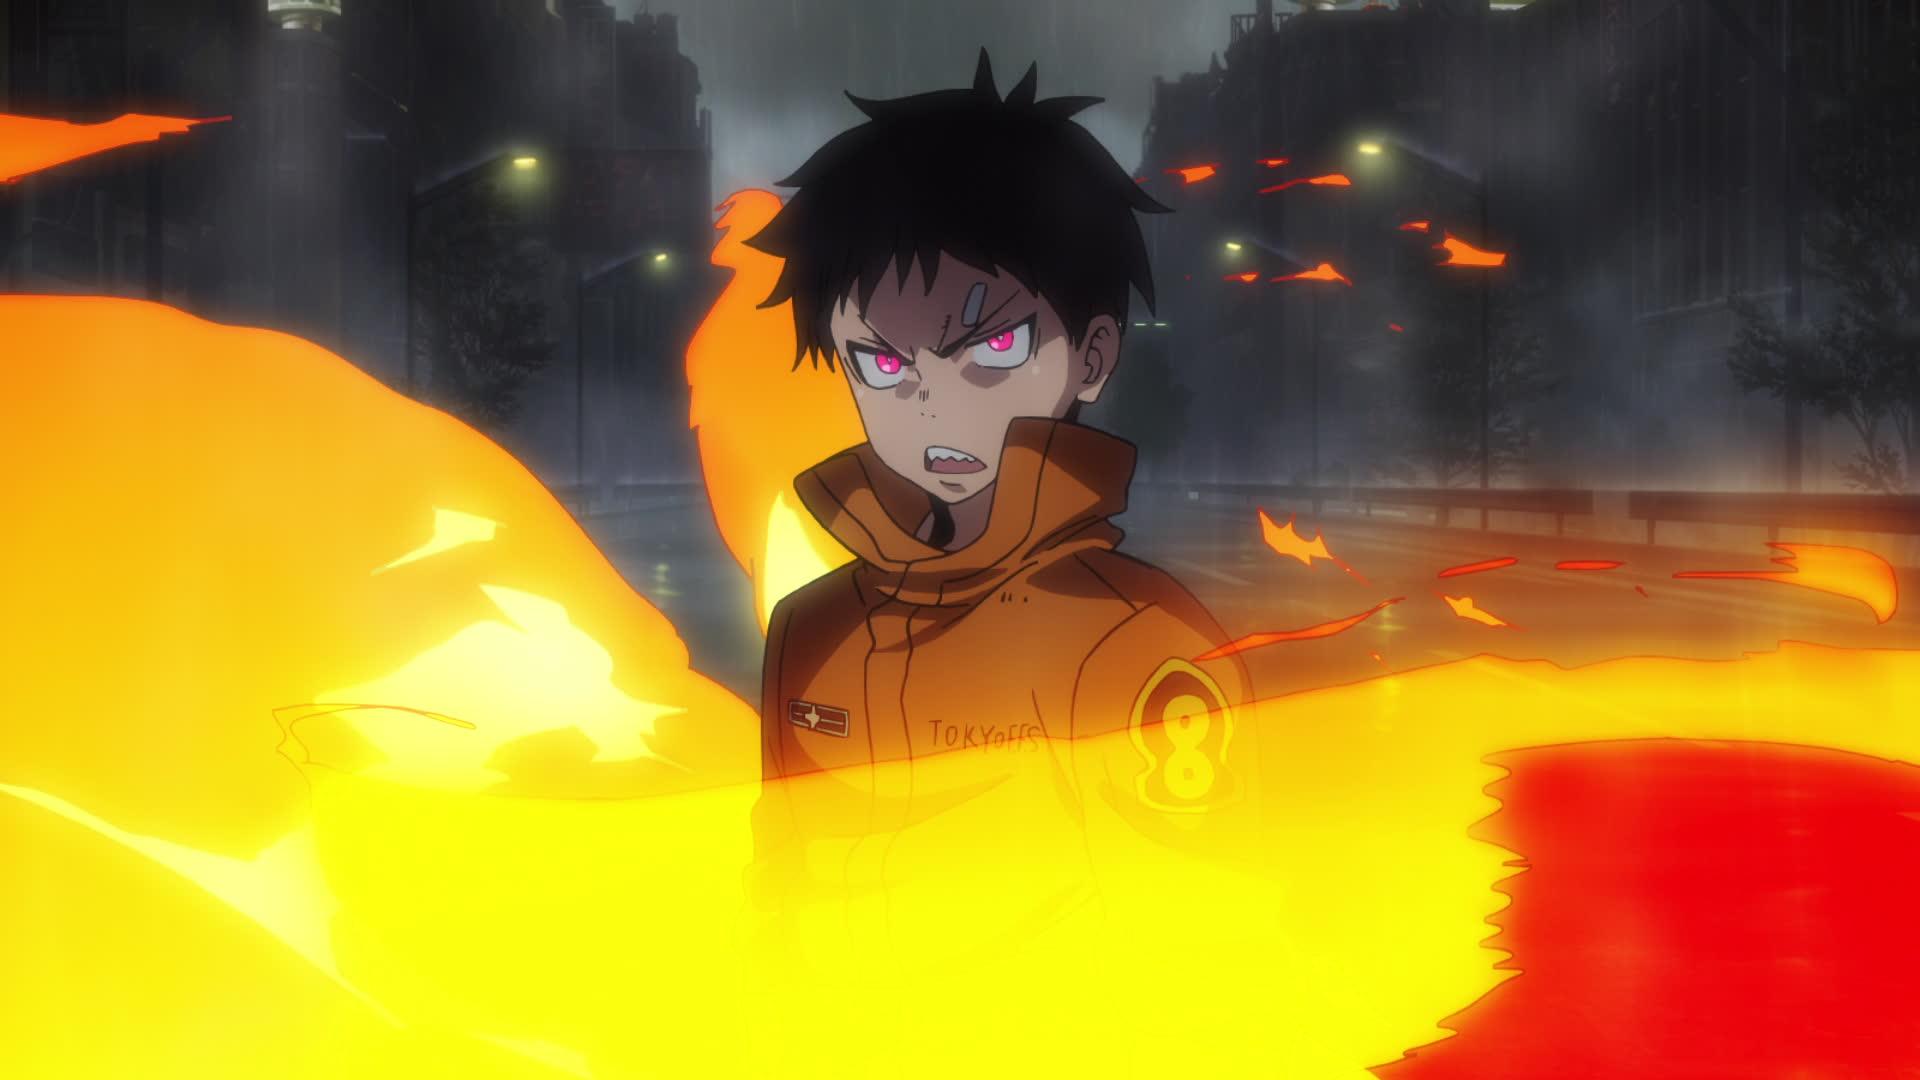 Fire Force - Anime en streaming GRATUIT, VOSTFR & VF, HD